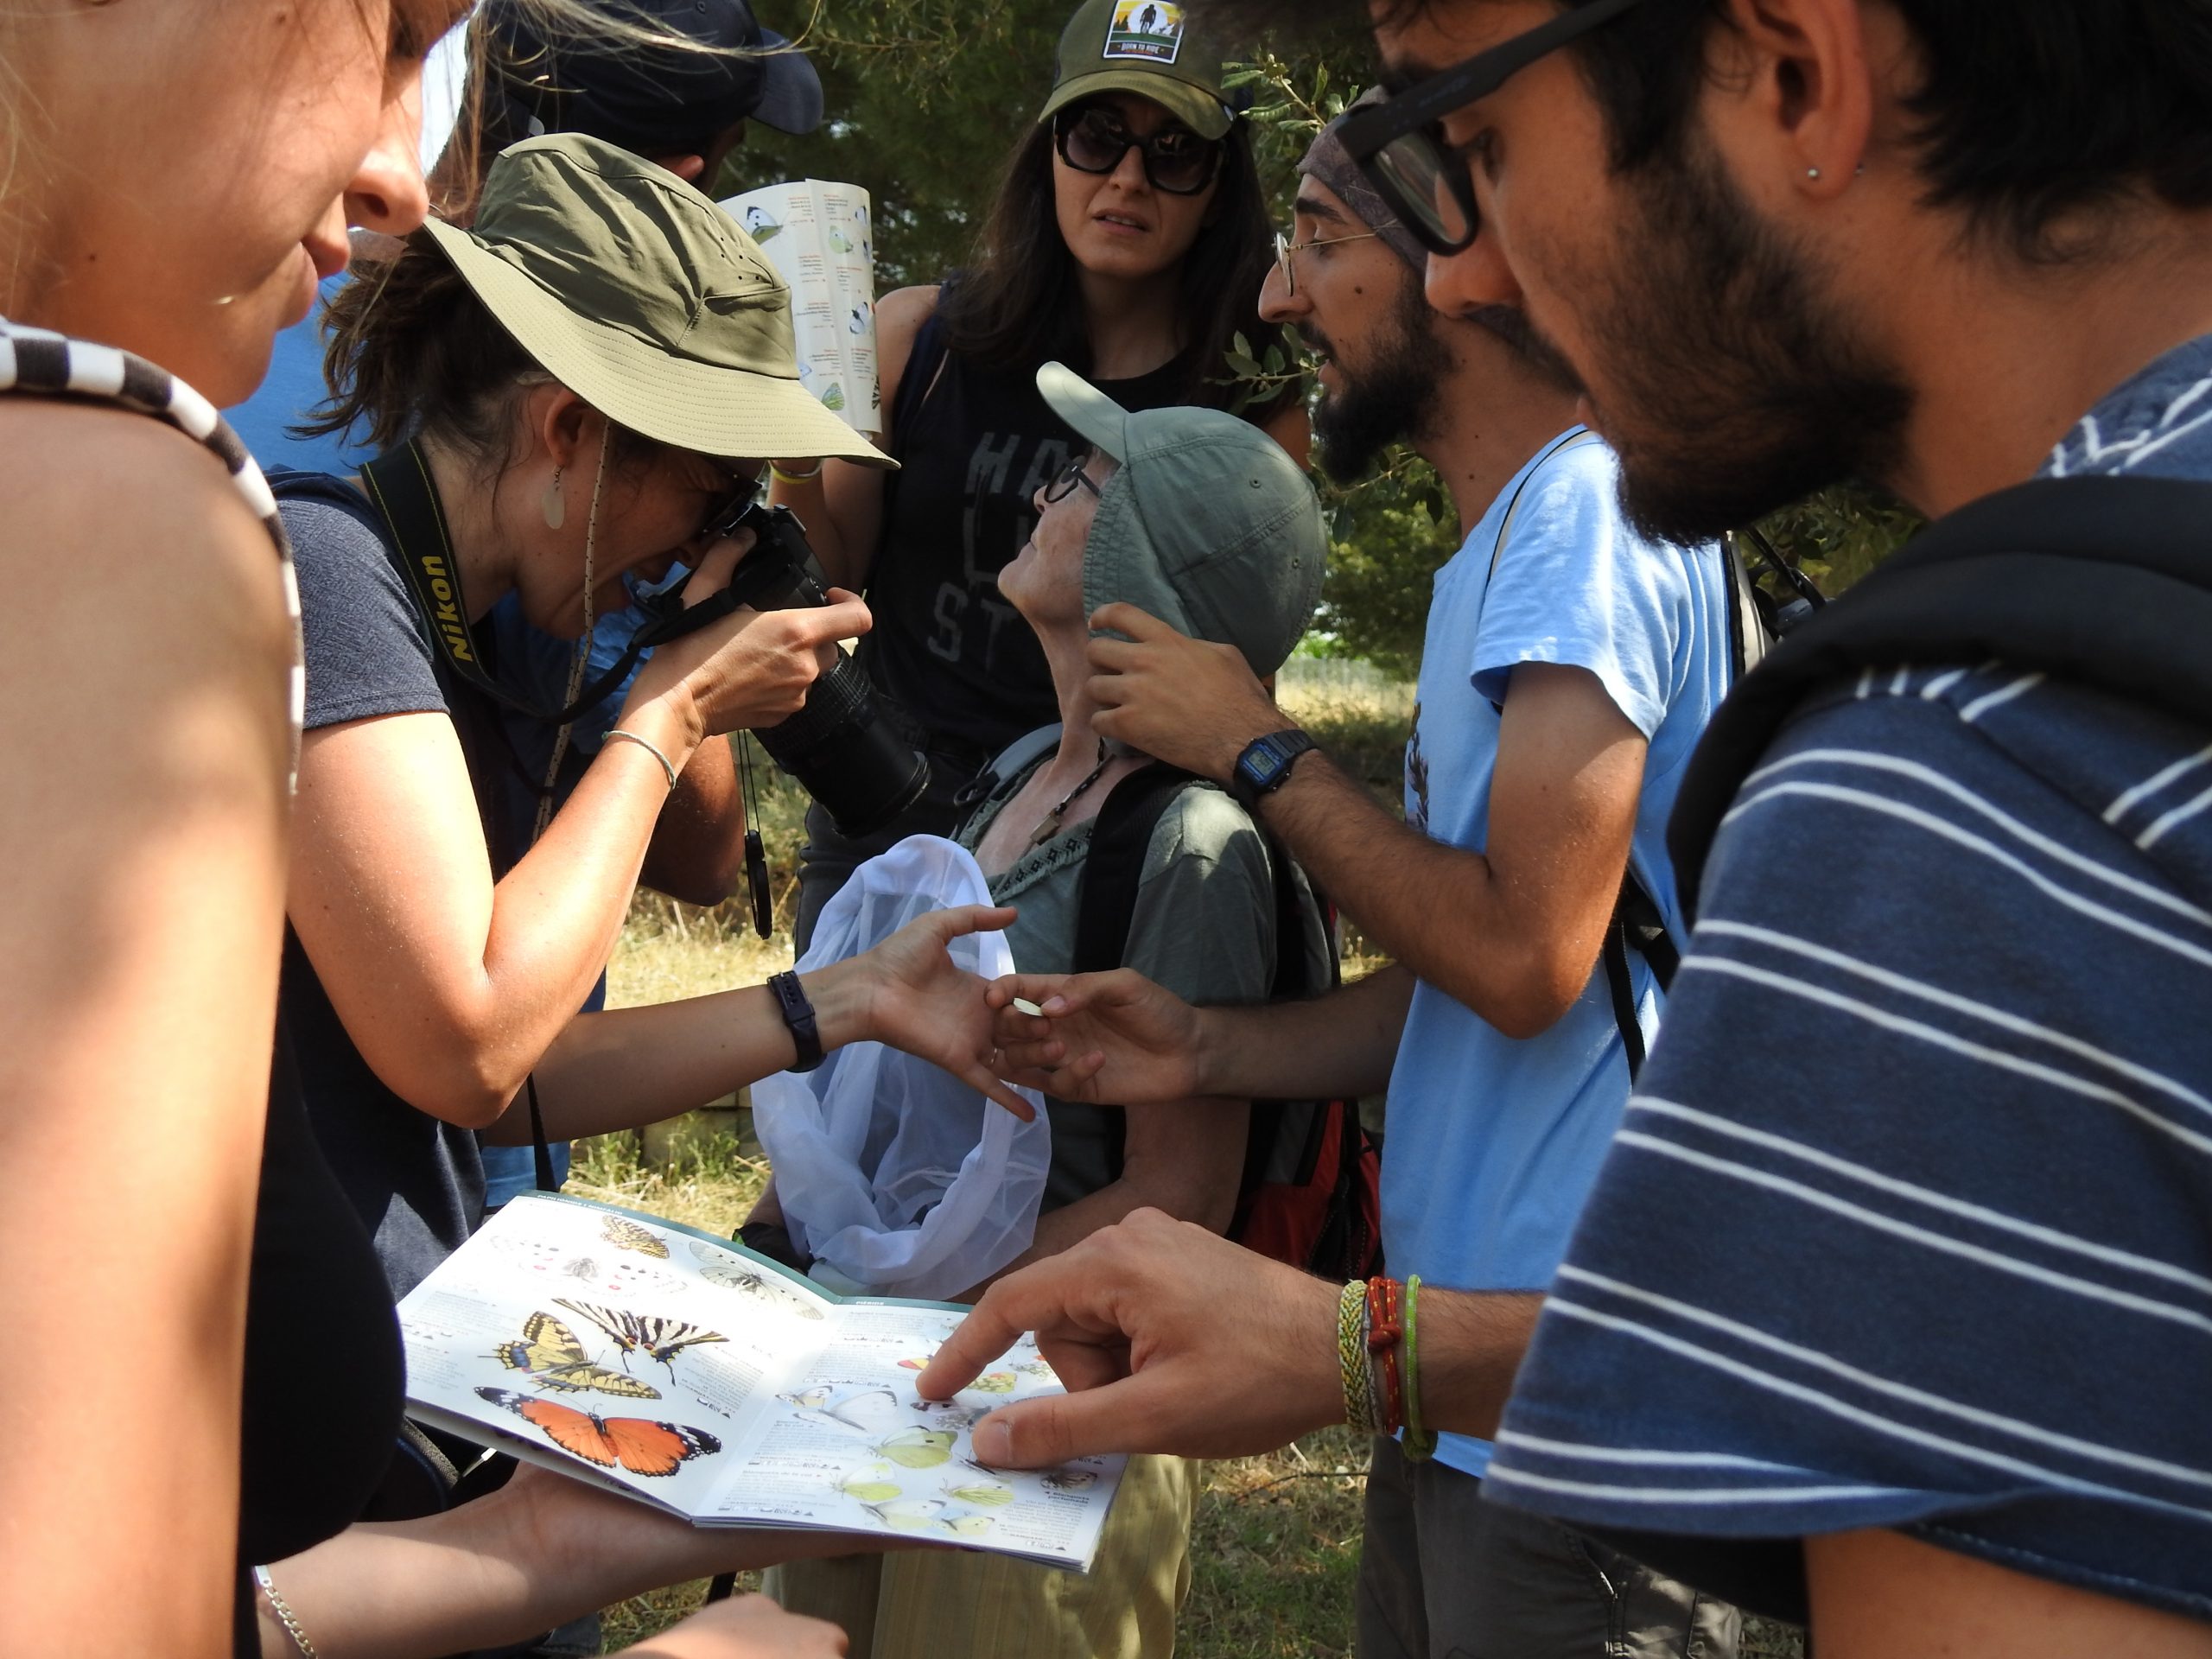 Voluntariado del proyecto de ciencia ciudadana Observatorio metropolitano de mariposas mBMS en un curso de formación sobre mariposas. Foto: Pau Guzmán.